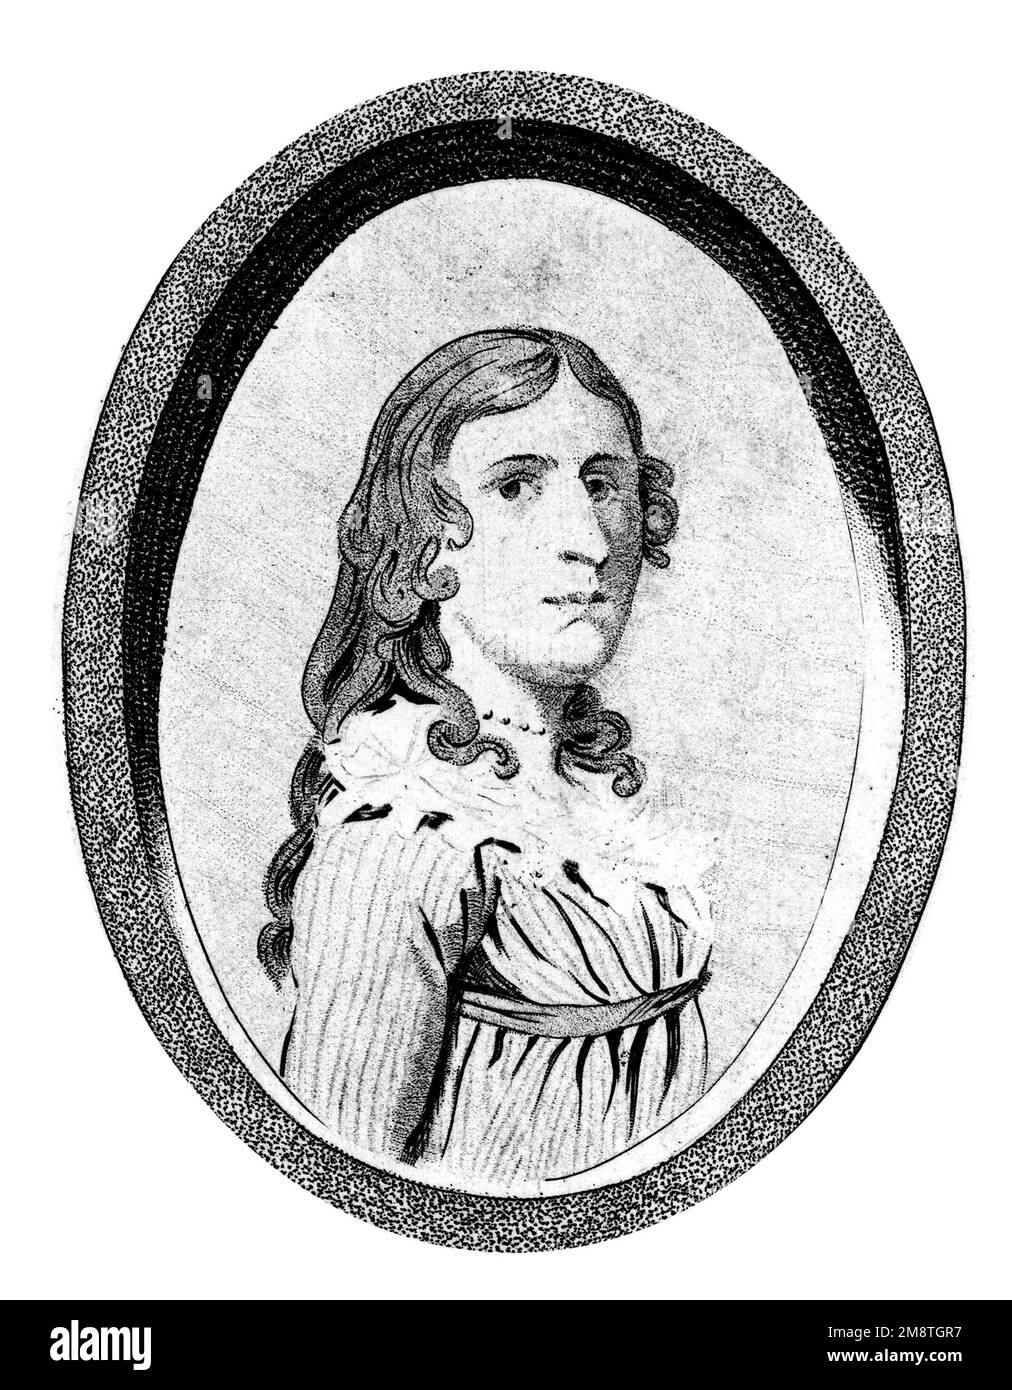 Retrato del frontispicio de un libro sobre la vida de Deborah Sampson. Deborah Sampson Gannett (1760-1827) fue una mujer que se disfrazó de hombre, Robert Shirtliff, para unirse al Ejército Continental. Foto de stock